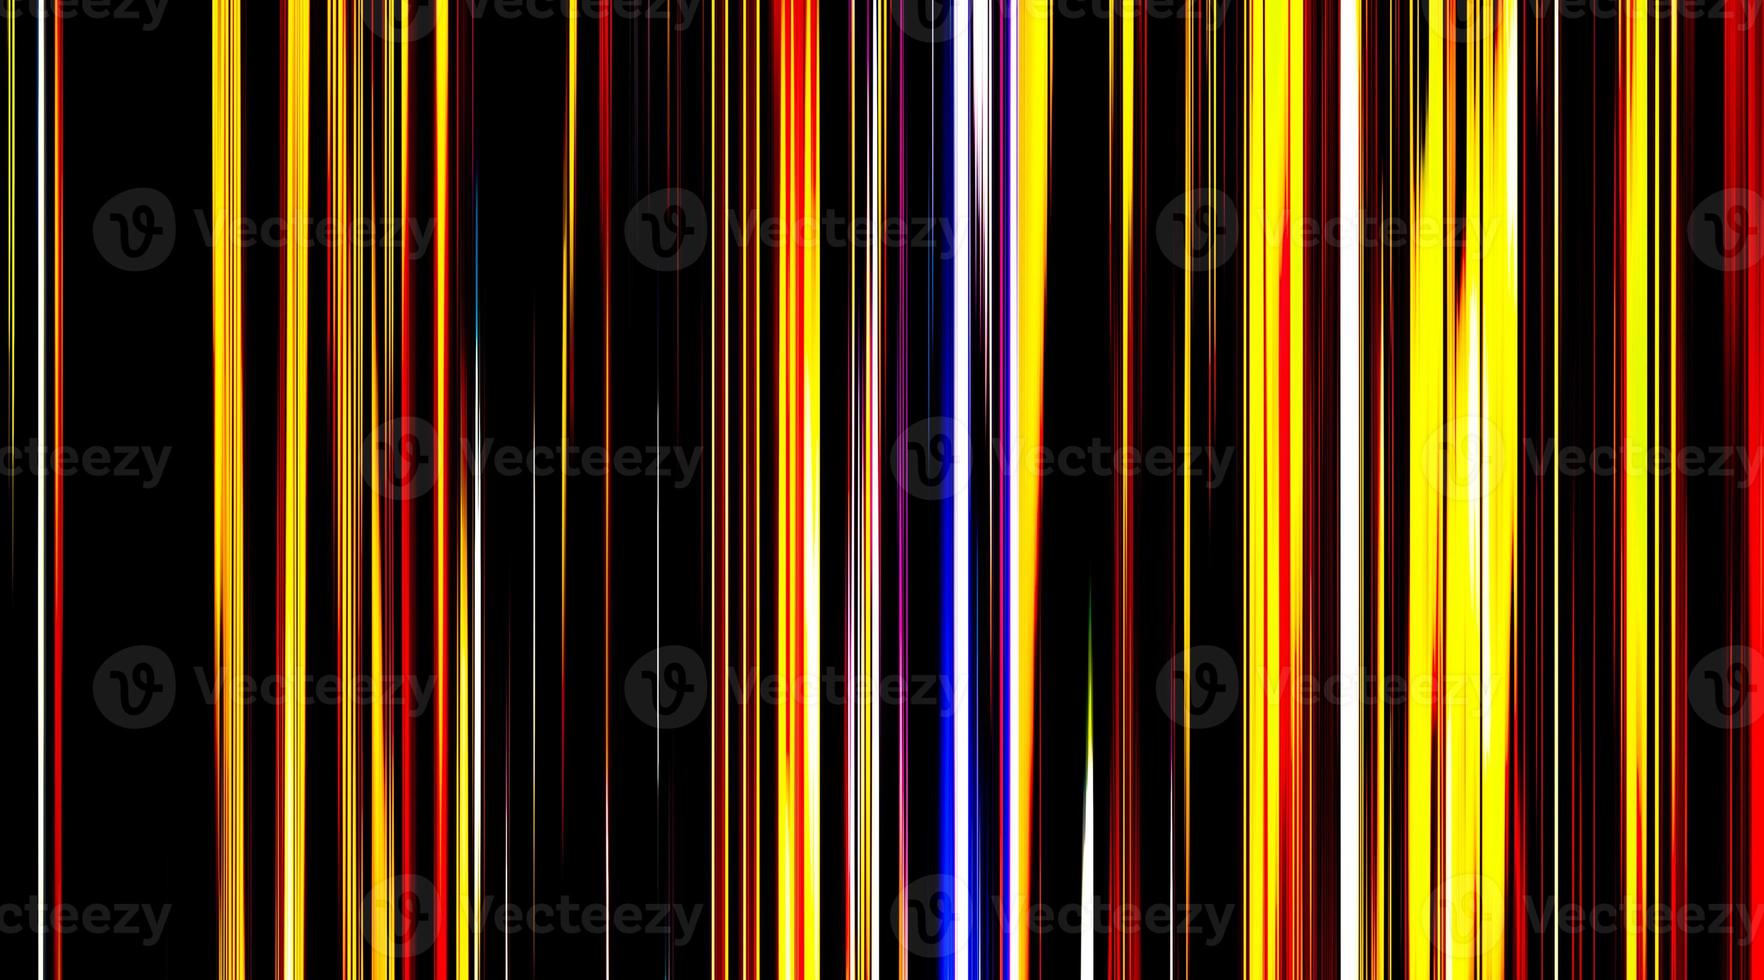 éclats de lumière colorés sur fond noir. fusées éclairantes de l'espace de torsion de dégradé coloré, boucle parfaite. mouvement. stries verticales jaunes, rouges et blanches de lumière qui coule lentement et change. photo